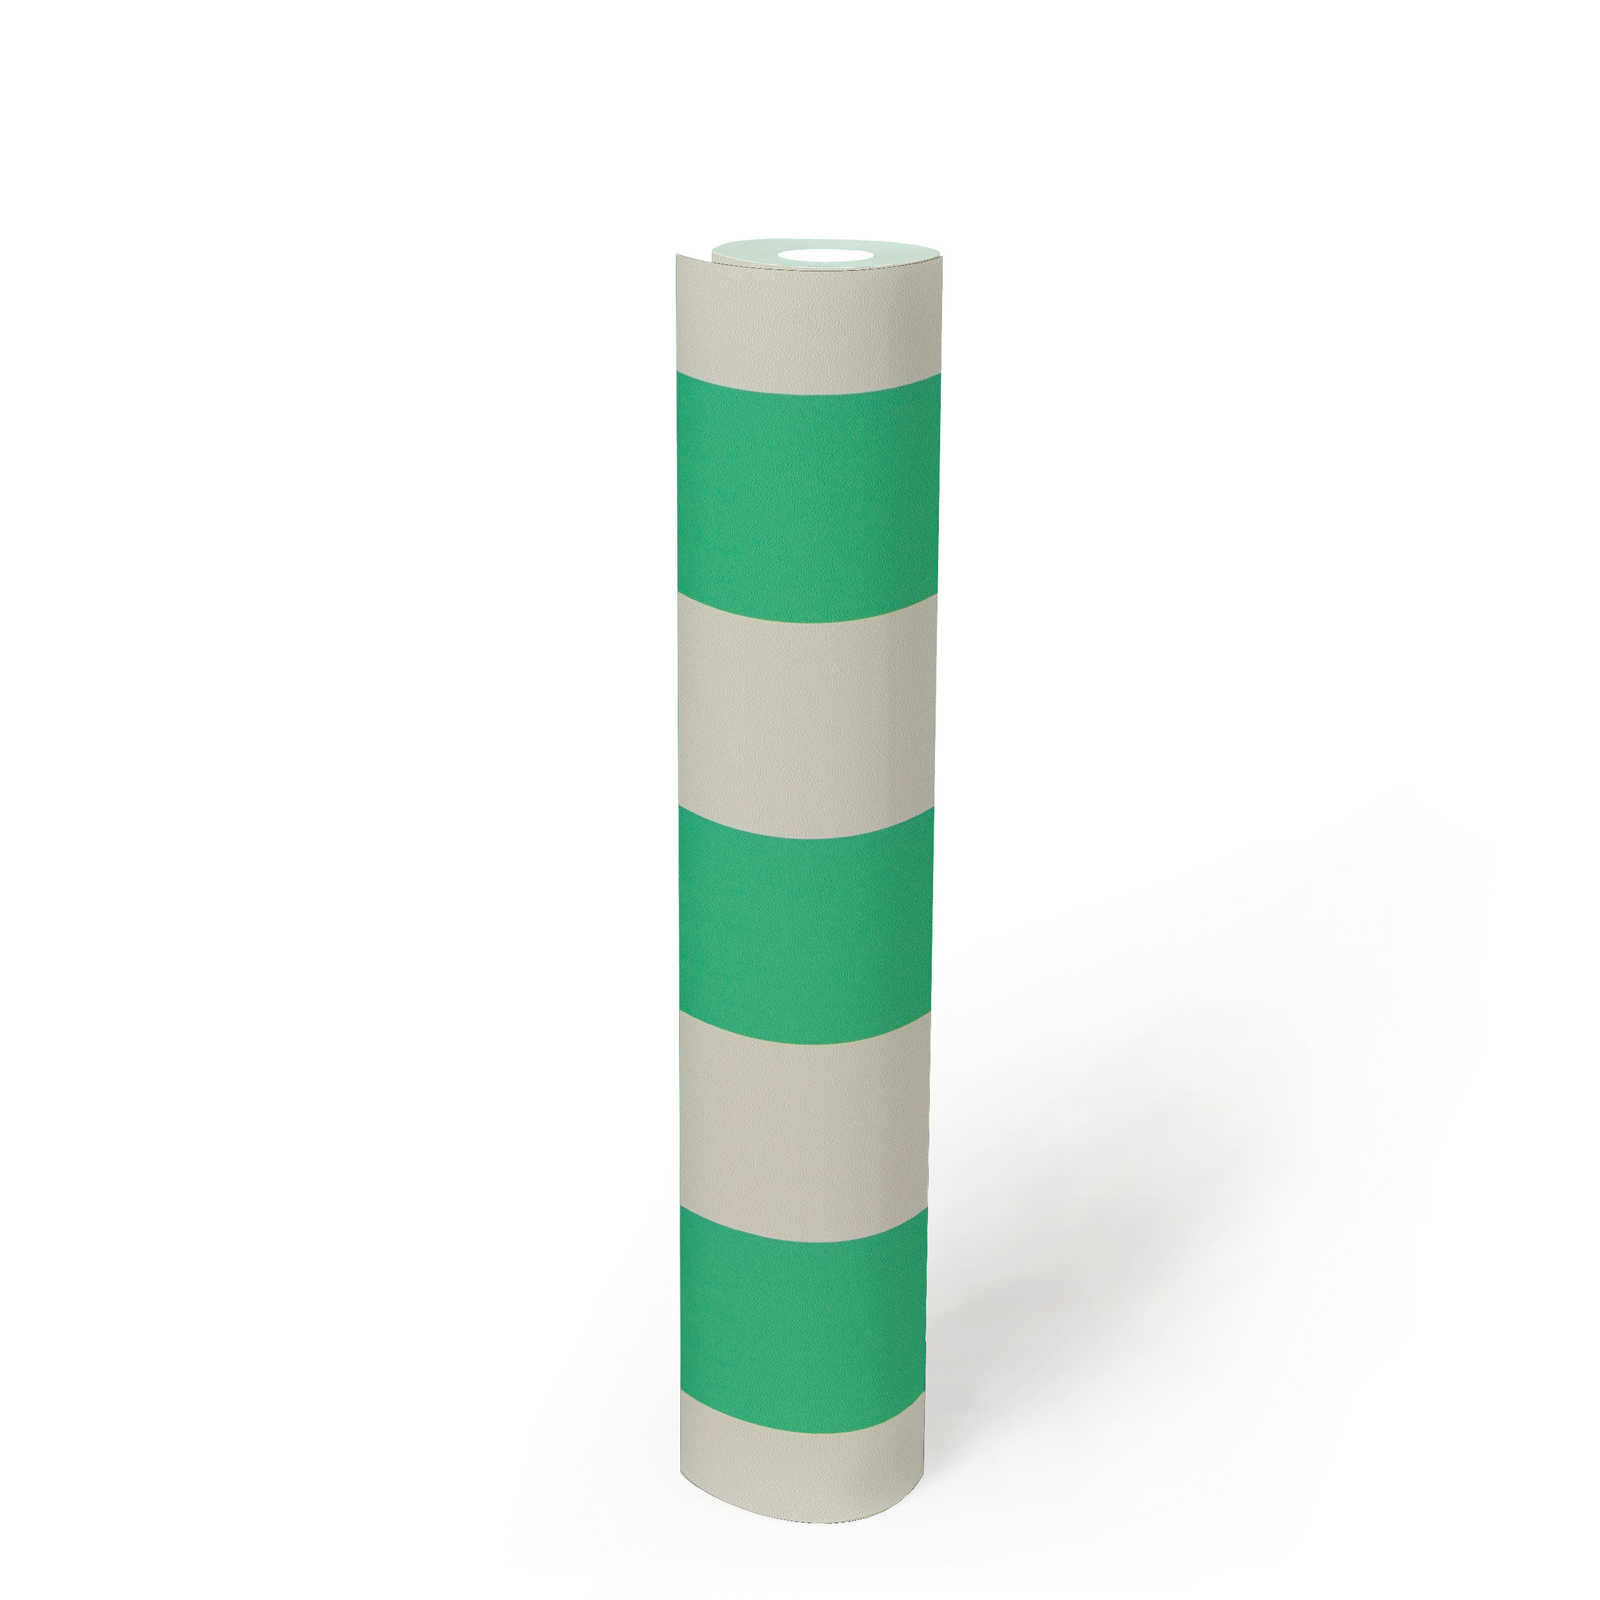             Mustertapete mit Vierecken grafisches Muster – Grün, Weiß
        